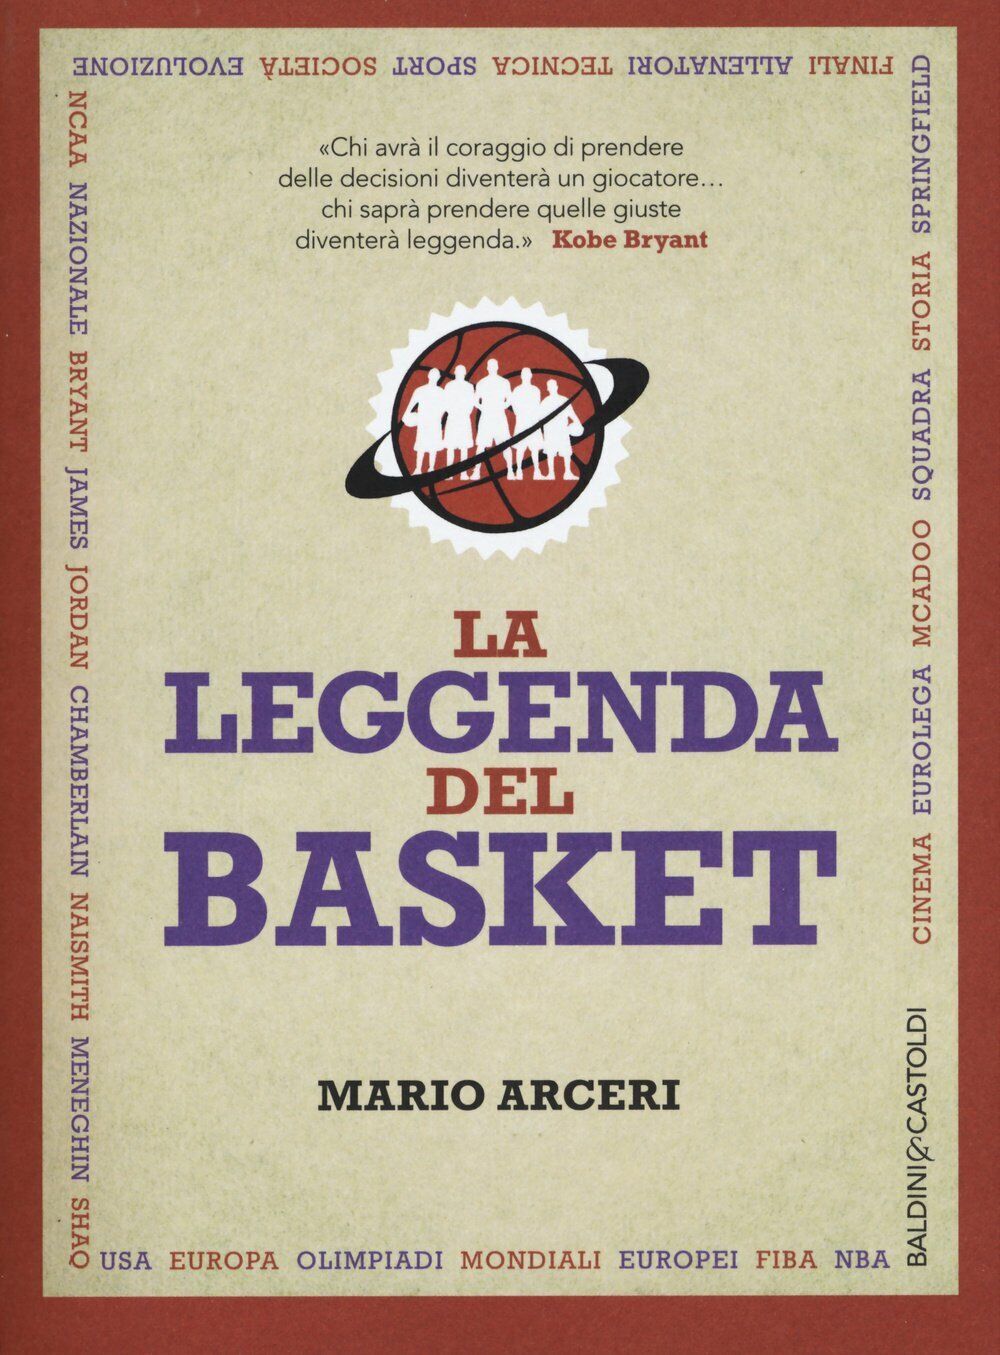 La leggenda del basket - Mario Arceri - Baldini + Castoldi, 2015